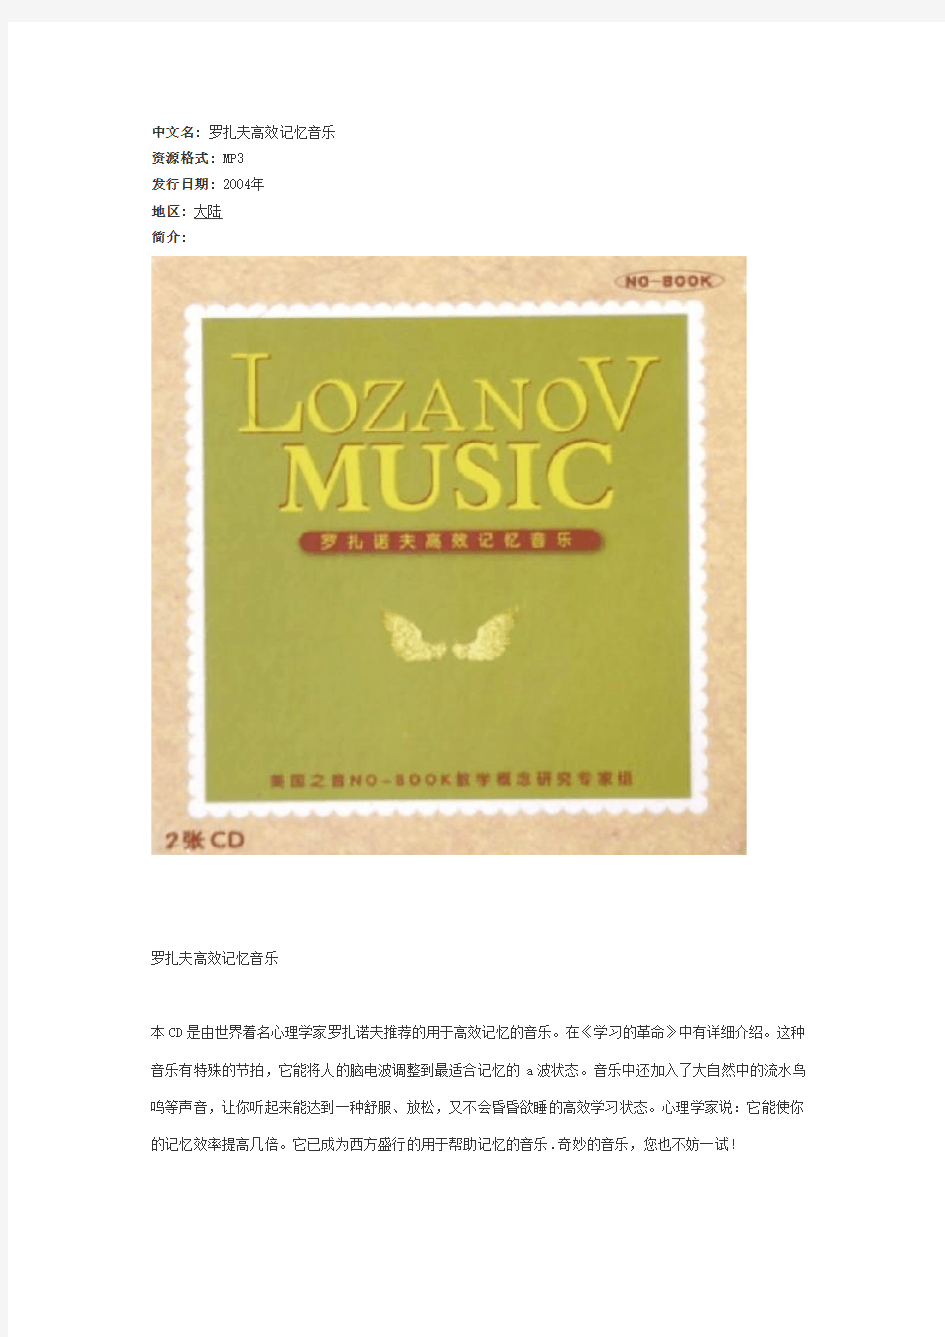 罗扎夫高效记忆音乐